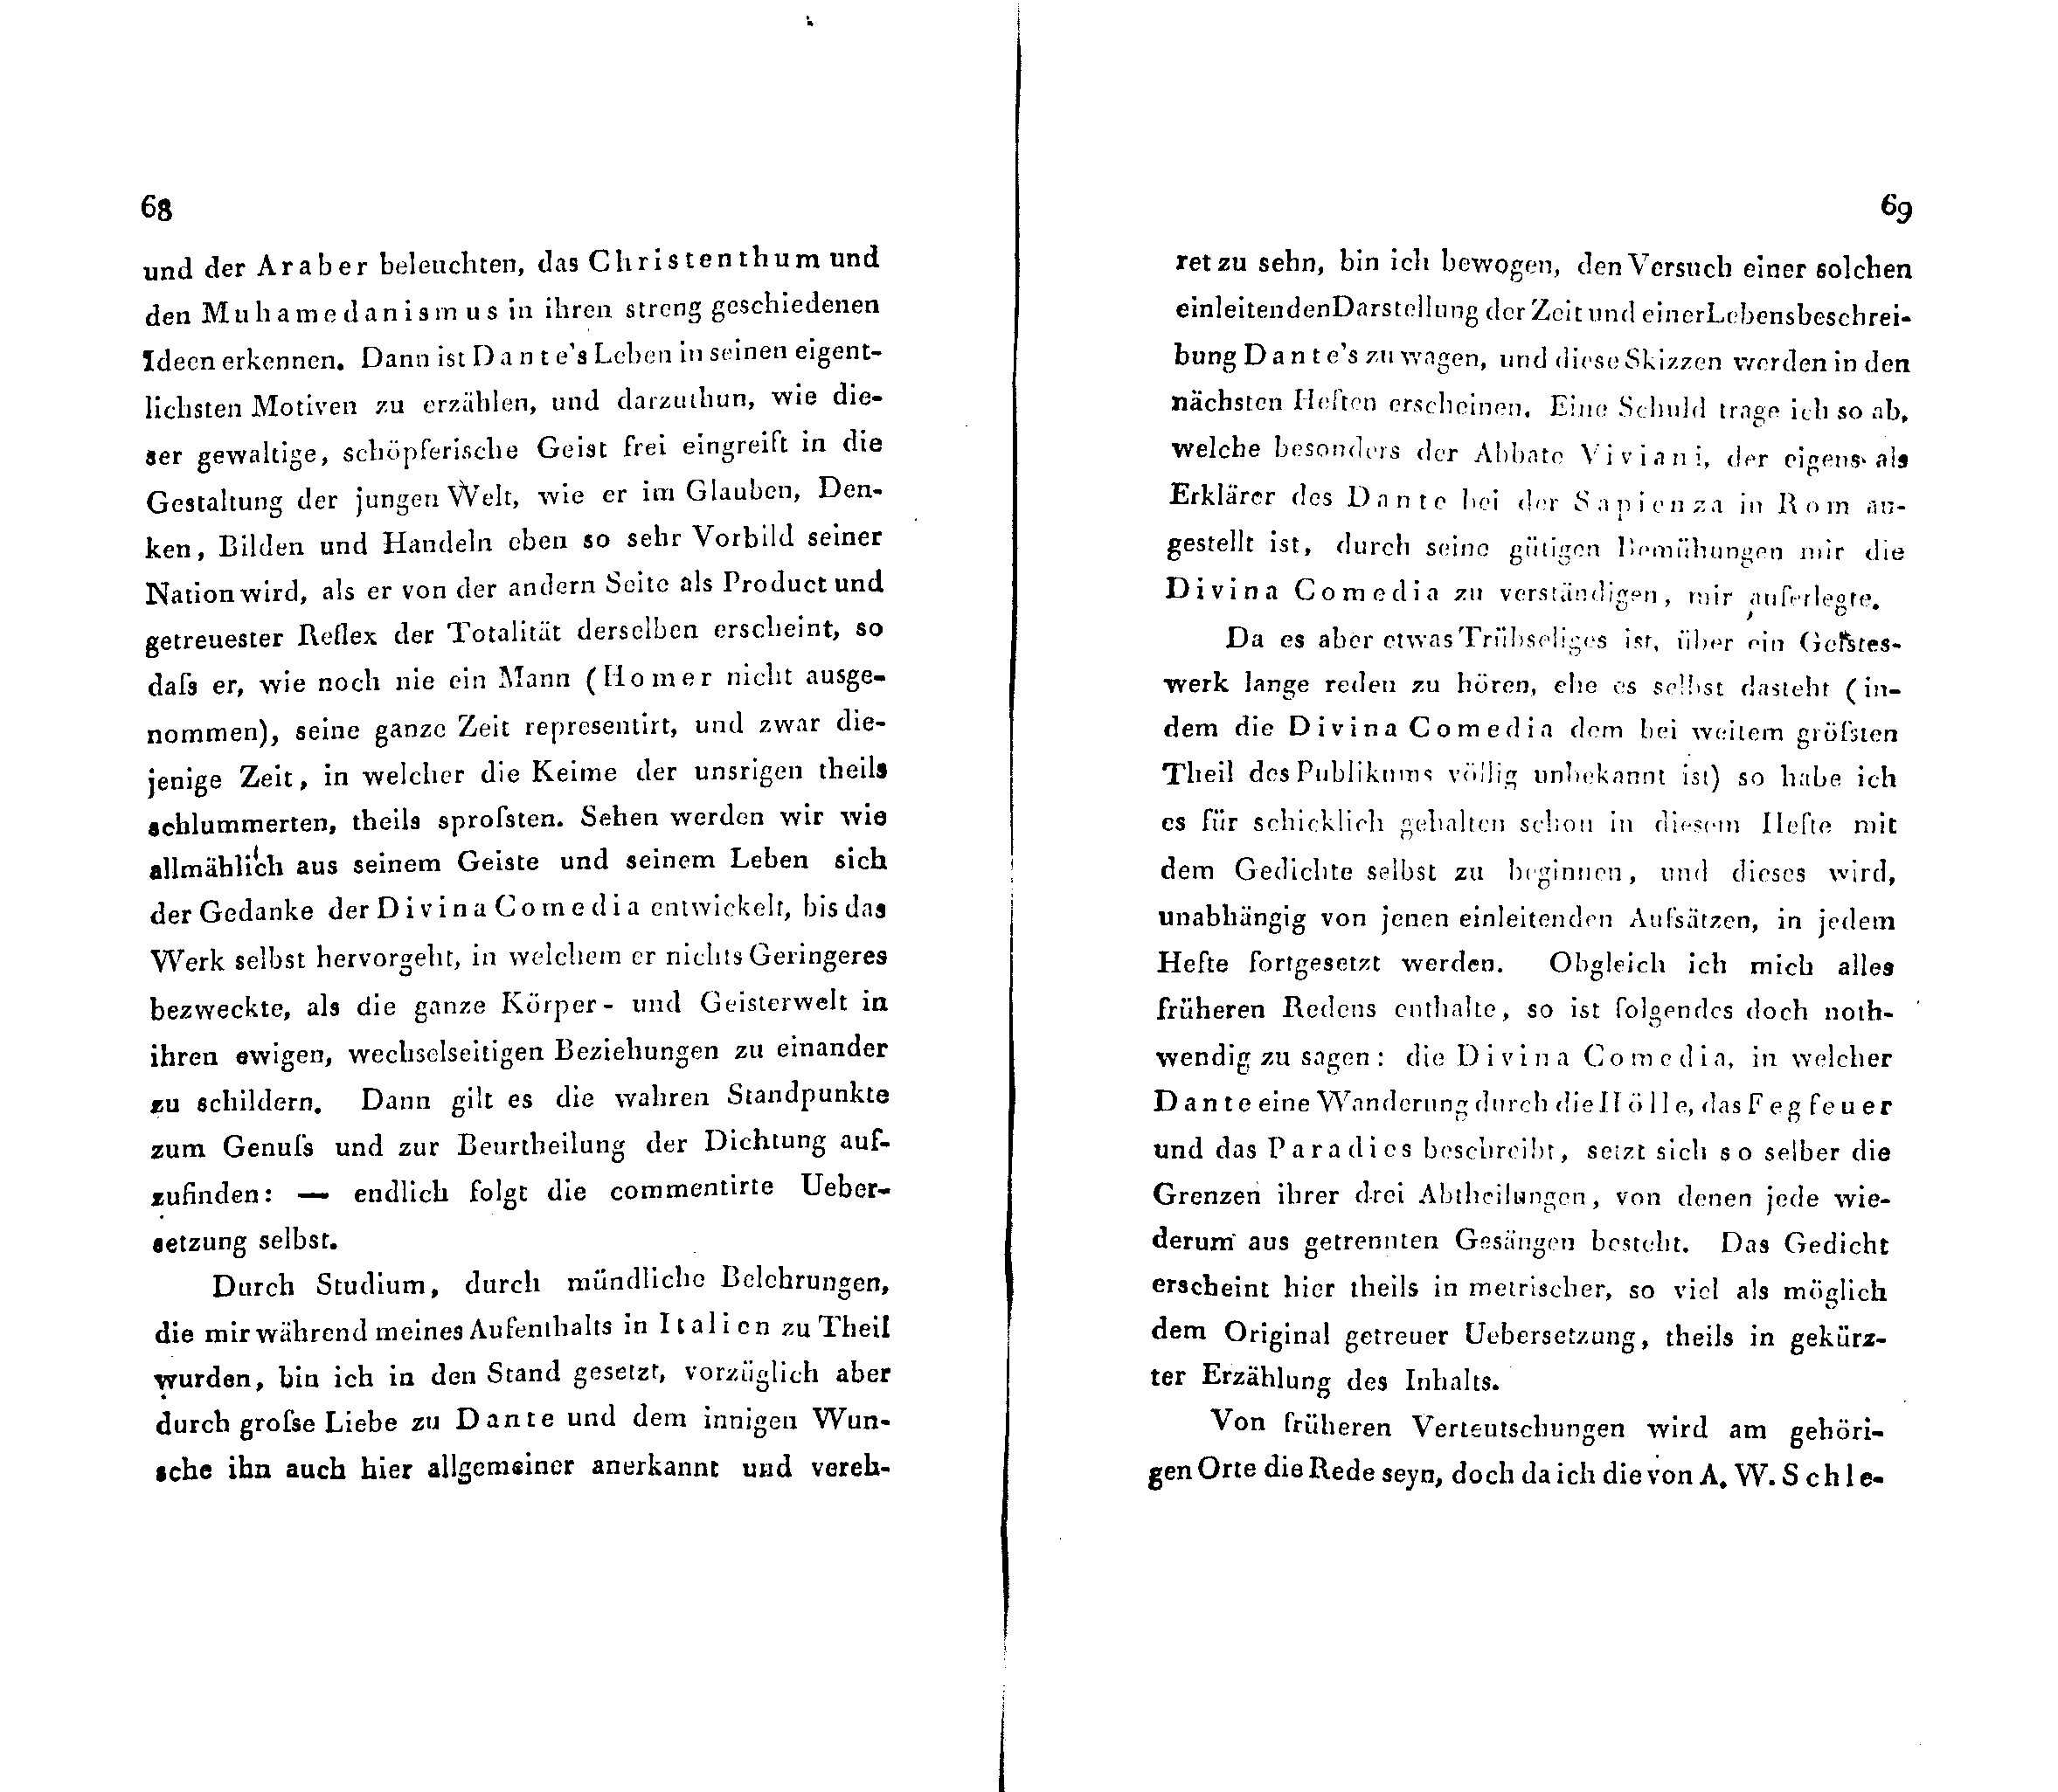 Ueber Dante Alighieri, seine Zeit und seine Divina Comedia (1824 – 1825) | 2. (68-69) Основной текст